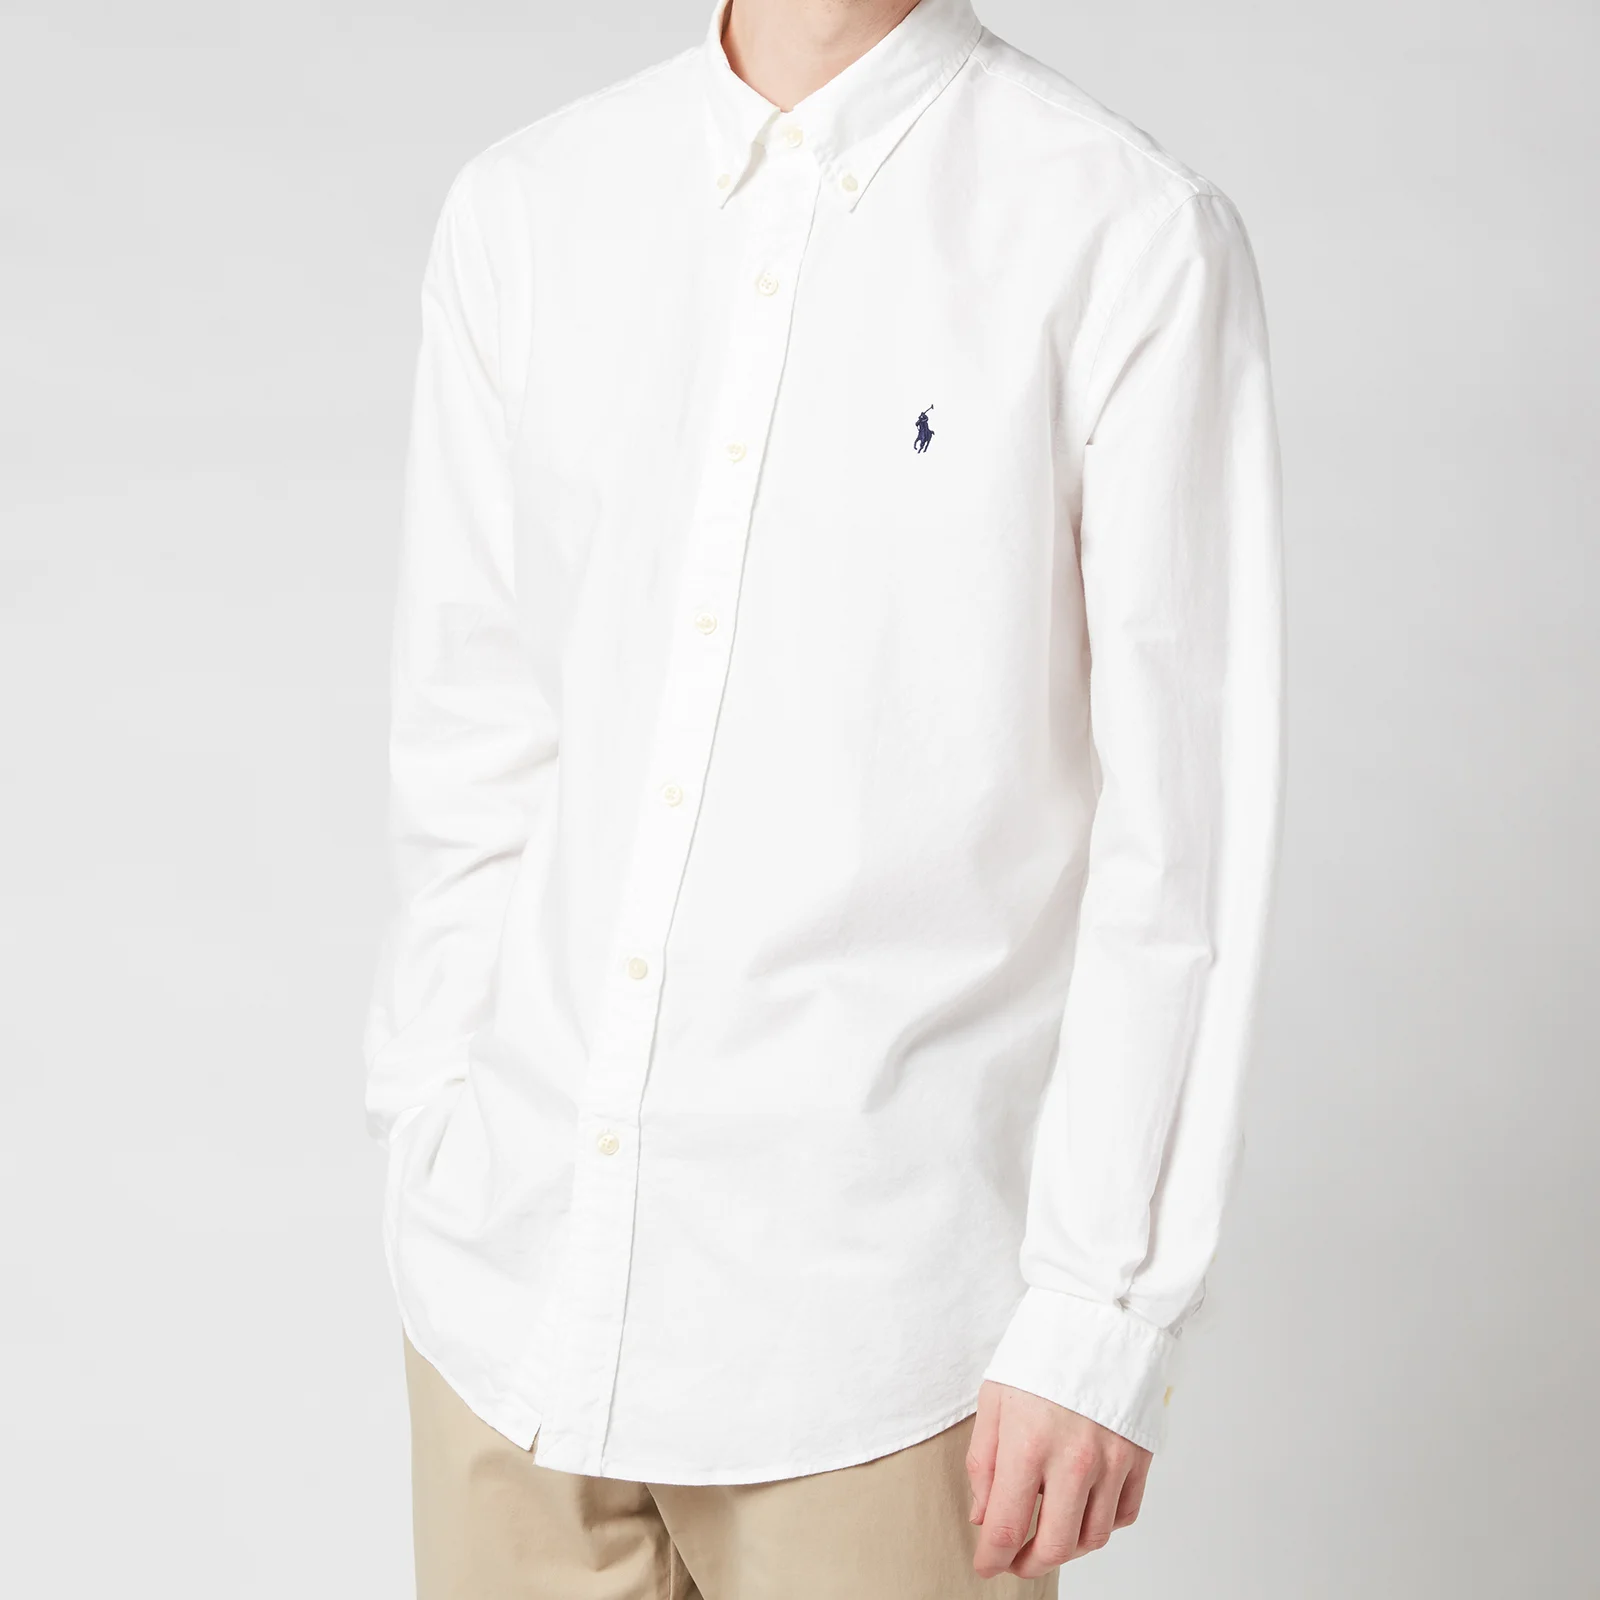 Polo Ralph Lauren Men's Custom Fit Oxford Long Sleeved Shirt - White - S Image 1